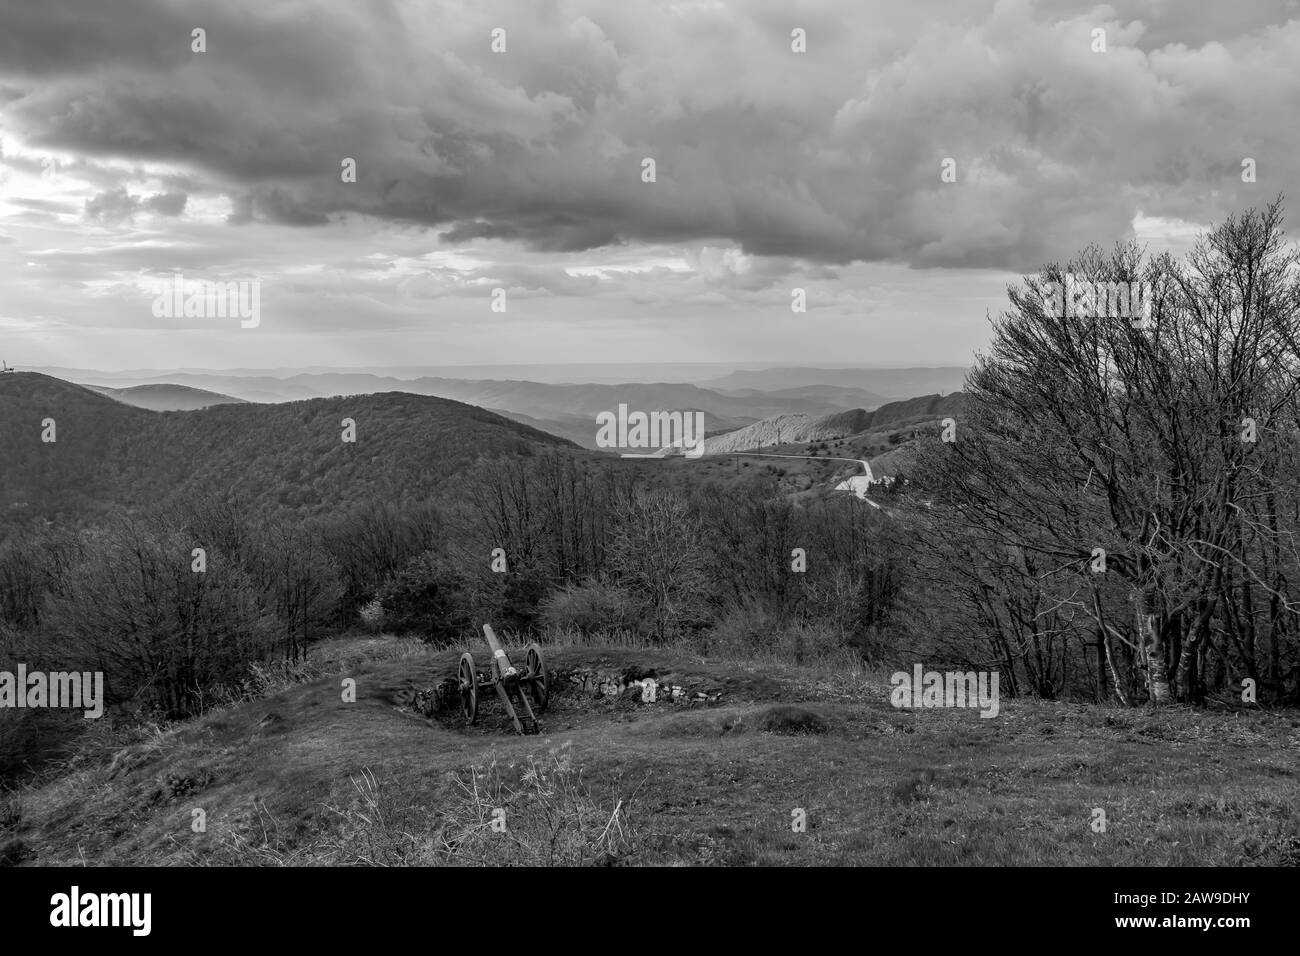 Vue spectaculaire en noir et blanc d'automne sur la chaîne de montagnes depuis le sommet de Shipka, la montagne Stara Planina dans le centre de la Bulgarie, vue depuis le mémorial de Shipka. Sensation d'humeur. Vieux canon russe Banque D'Images